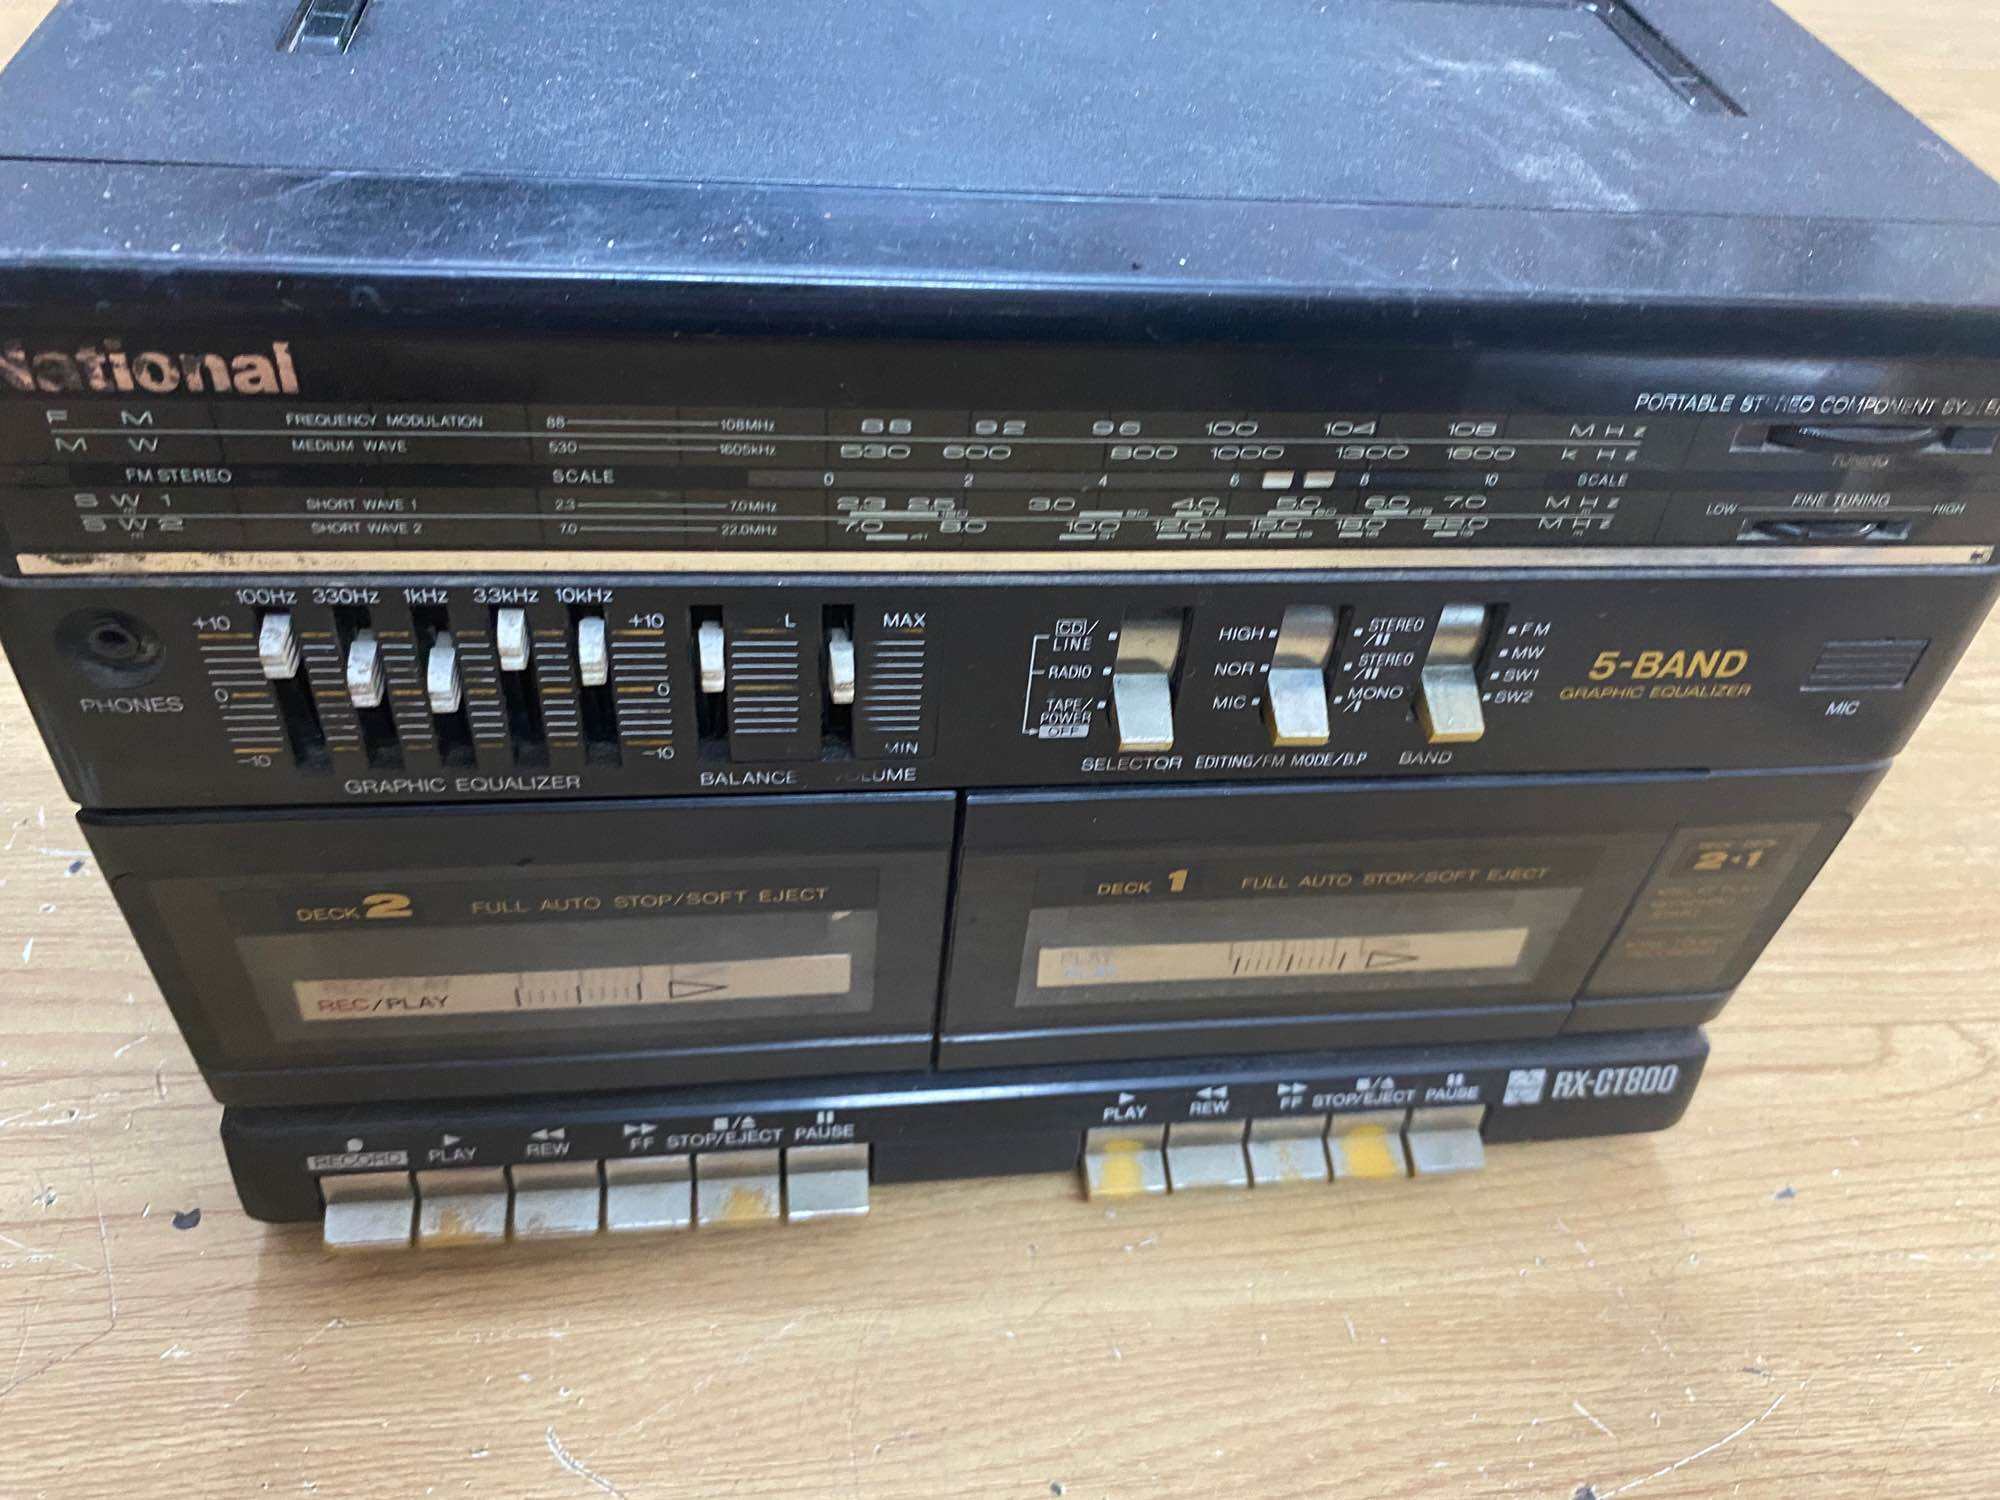 Cục giữa không loa Radio cassette Panasonic RX-CT800, chạy tốt cassette và radio